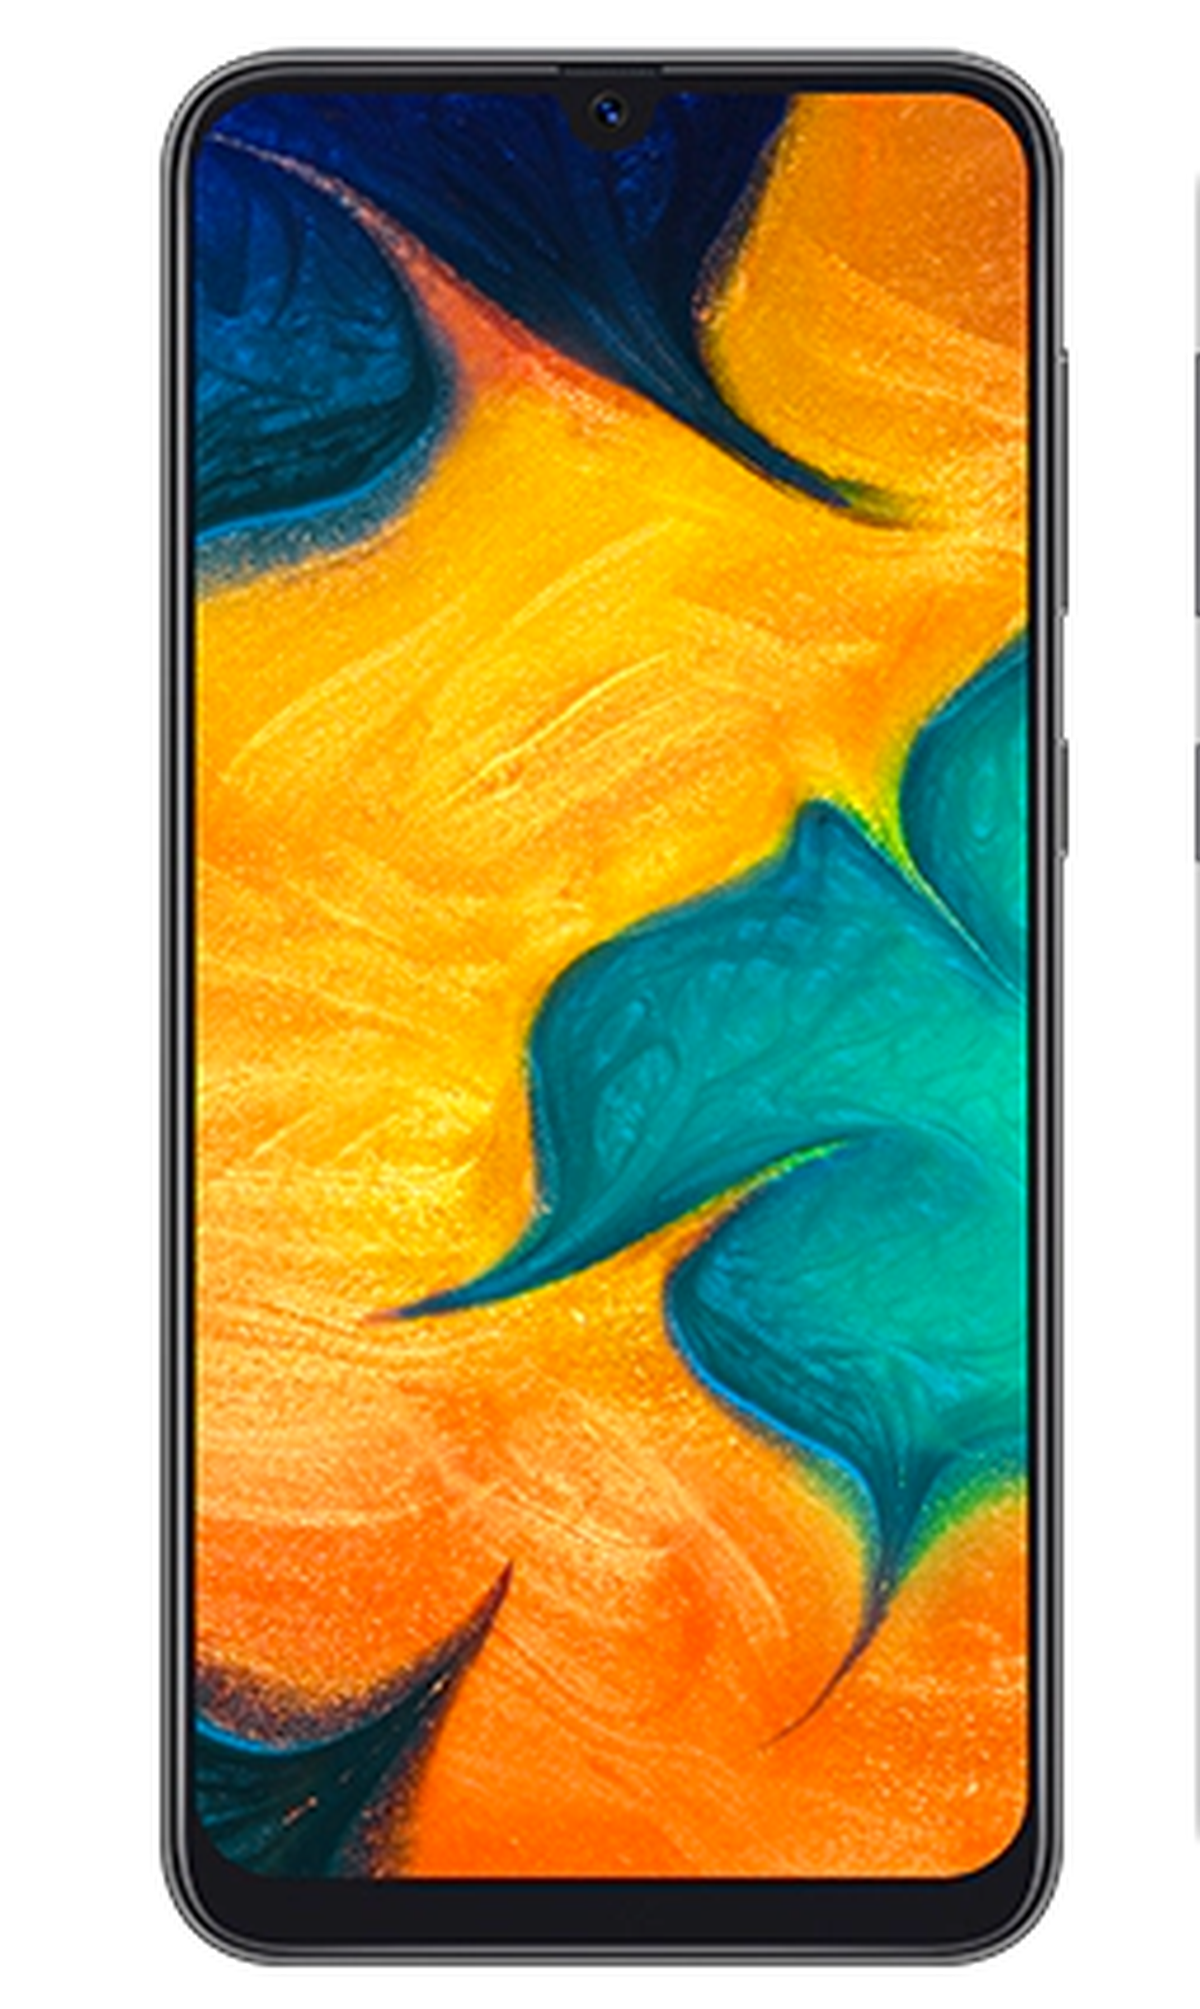 Dalset fondo Mansión Samsung Galaxy A30: características, precio y opiniones. | Computer Hoy